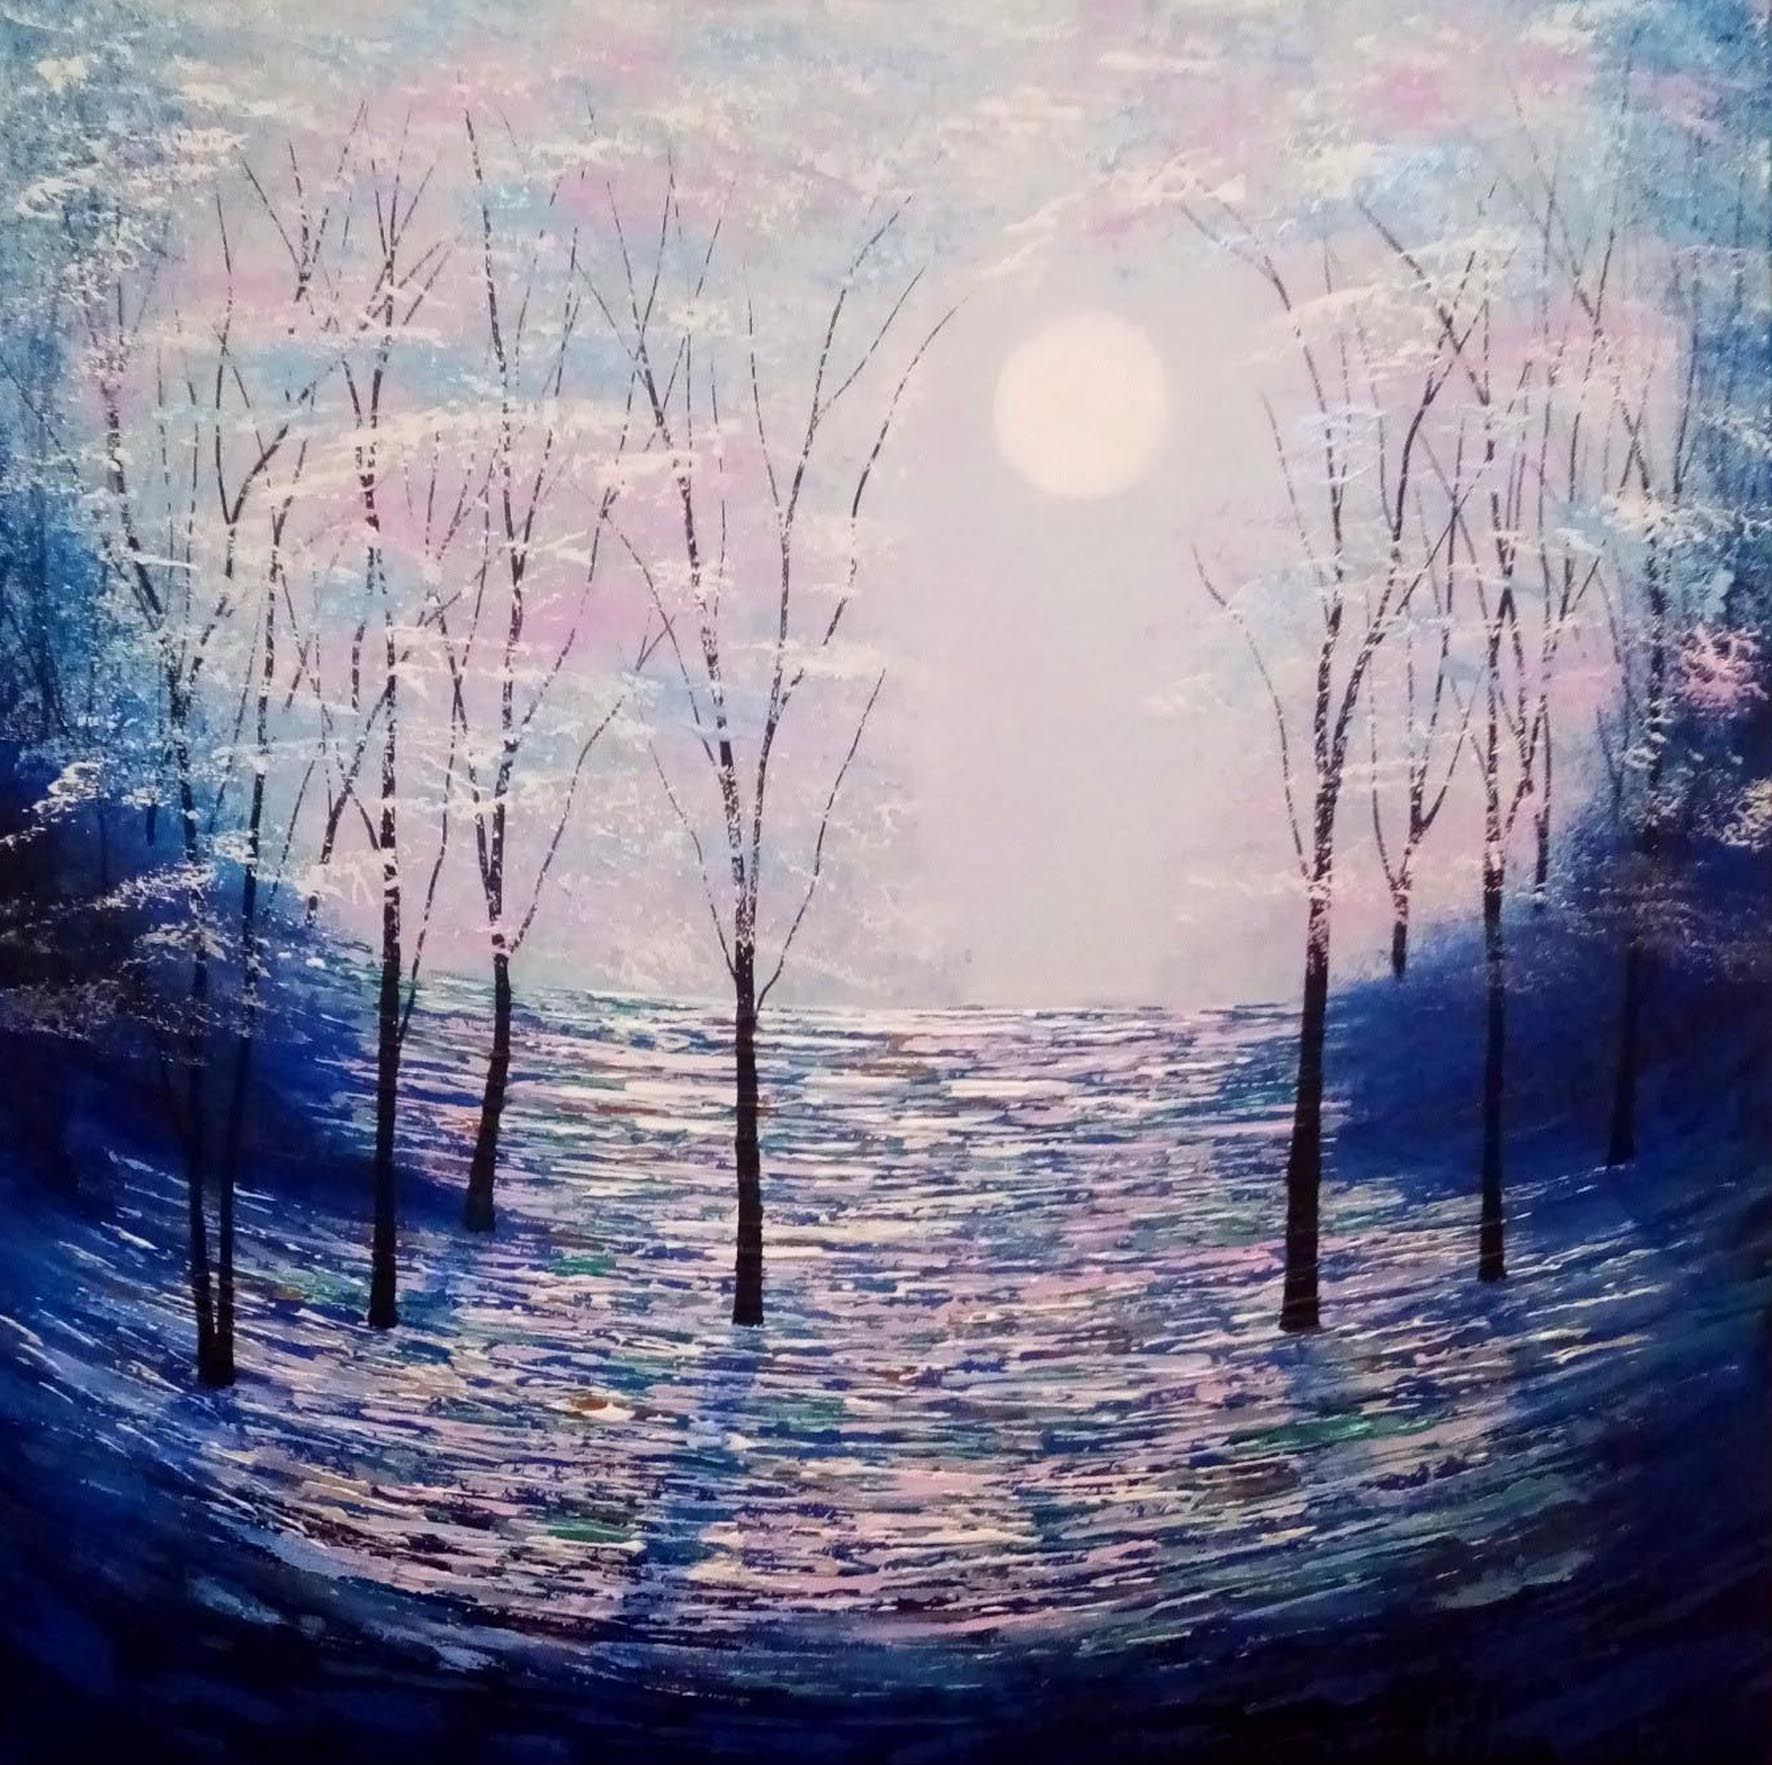 Moonbeam Wood by Amanda Horvath